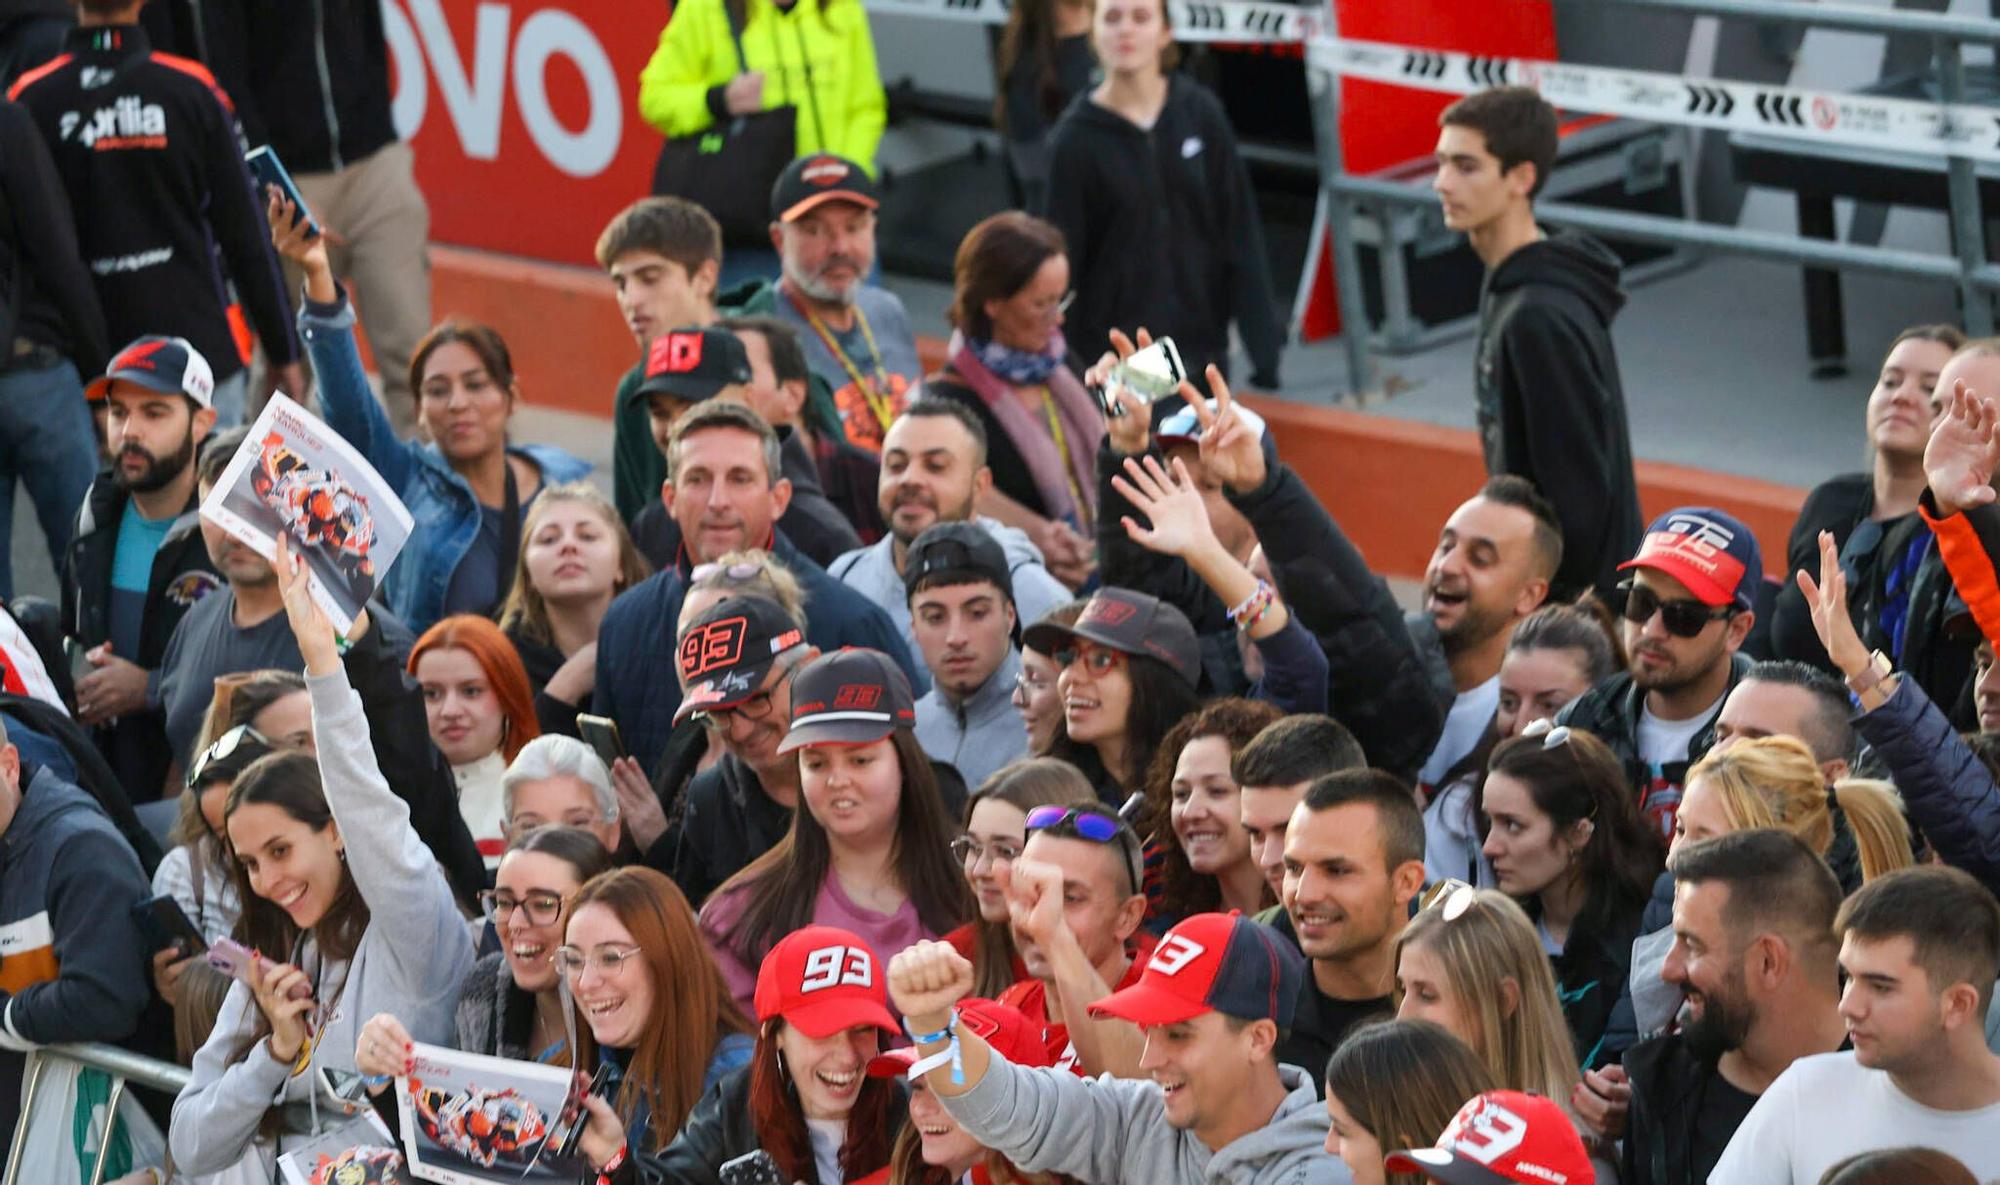 Más de 2.000 aficionados disfrutan del pitwalk con Marc Márquez y los pilotos de MotoGP